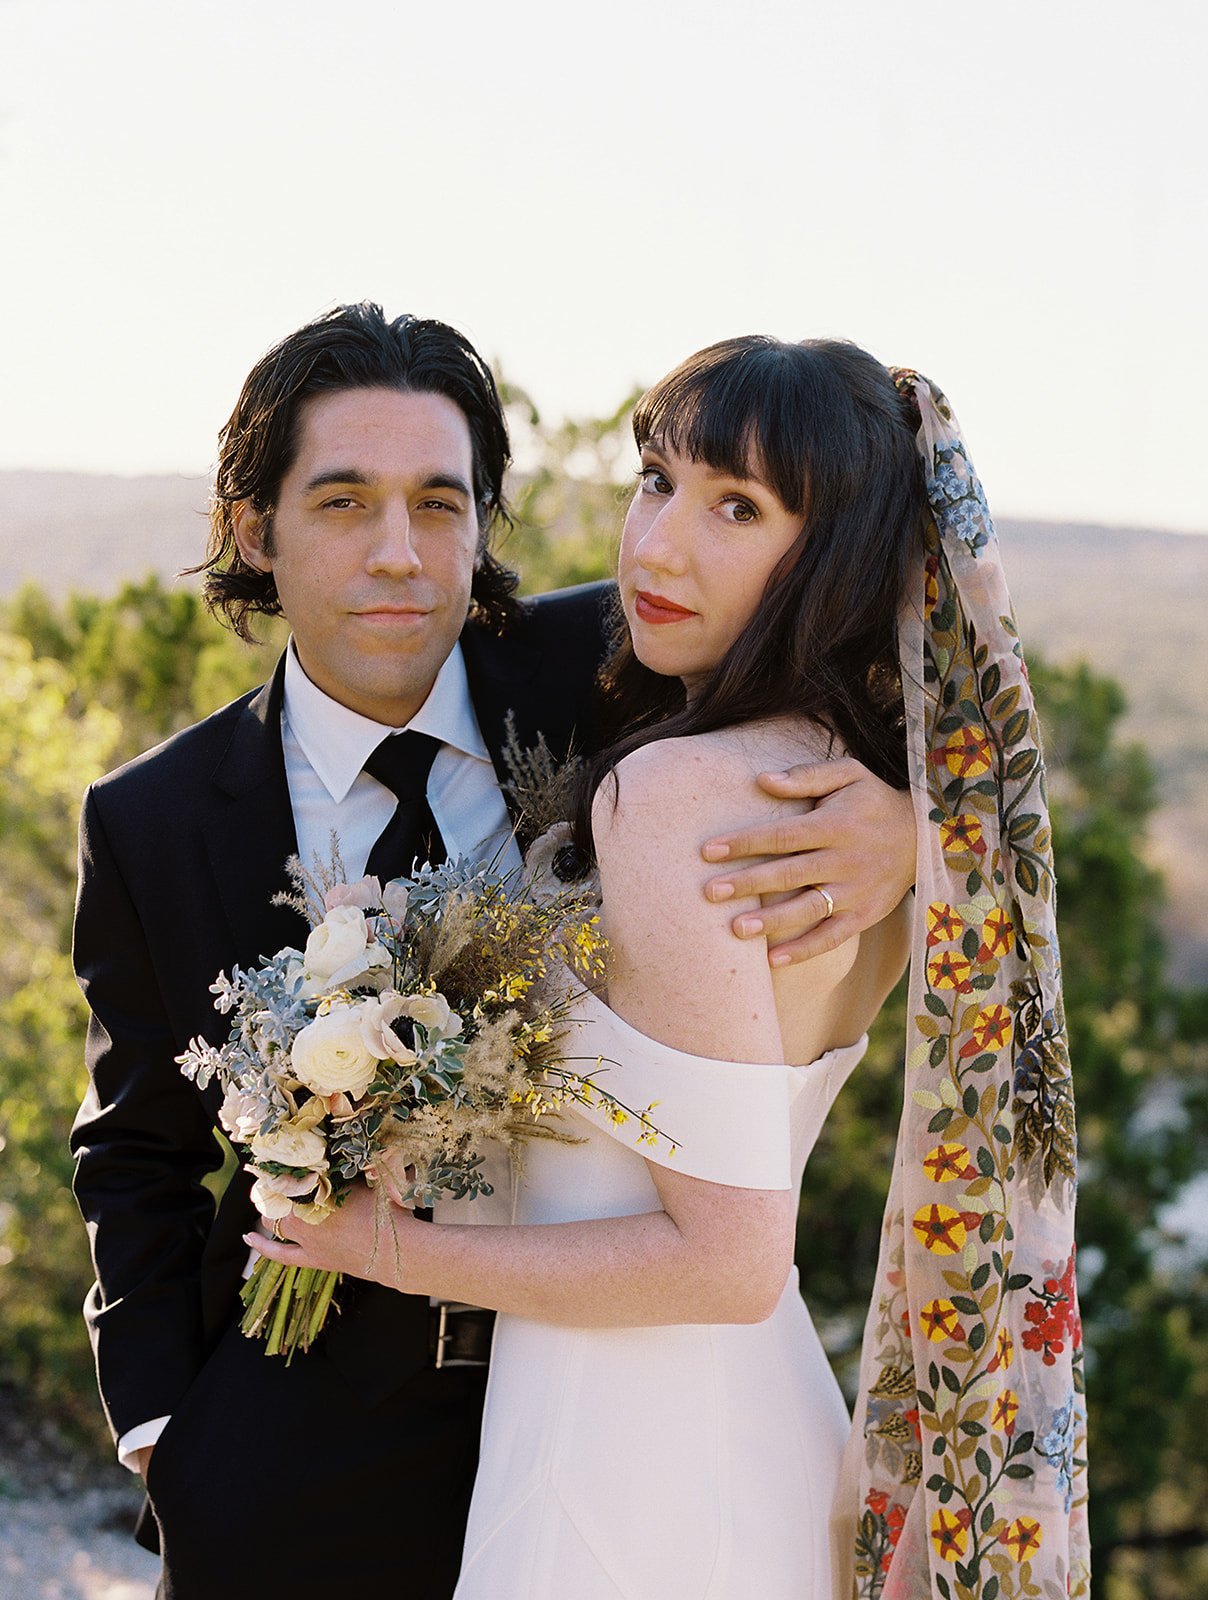 Best-Austin-Wedding-Photographers-Elopement-Film-35mm-Asheville-Santa-Barbara-Laguna-Gloria-22.jpg